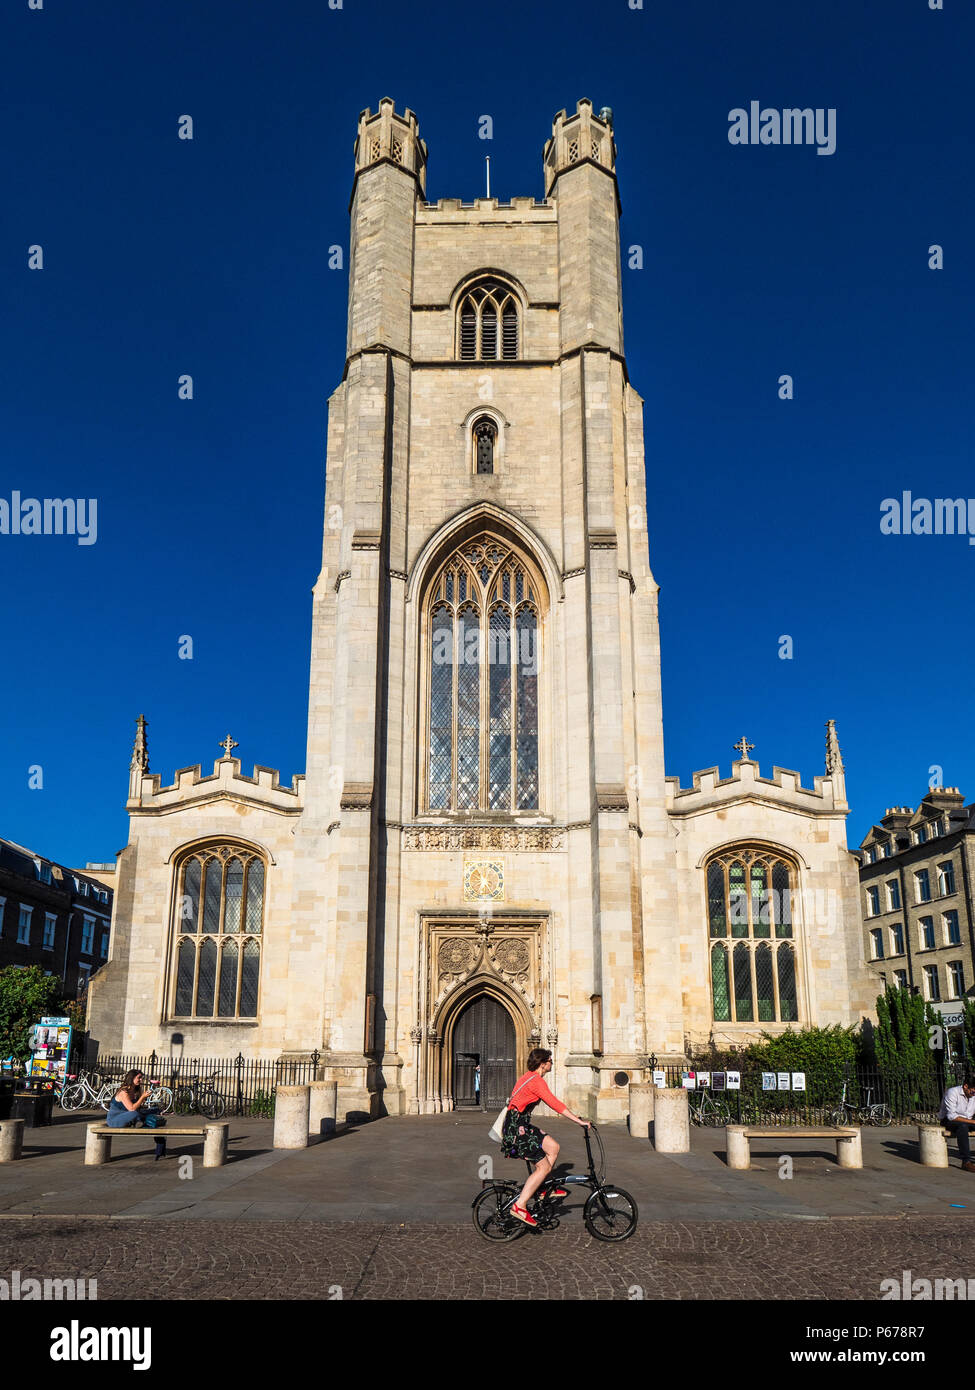 Cambridge Tourism - les cyclistes passent devant l'église de la Grande St Mary dans le centre de Cambridge. L'église, reconstruite après un incendie en 1290, est Cambridge University Churc Banque D'Images